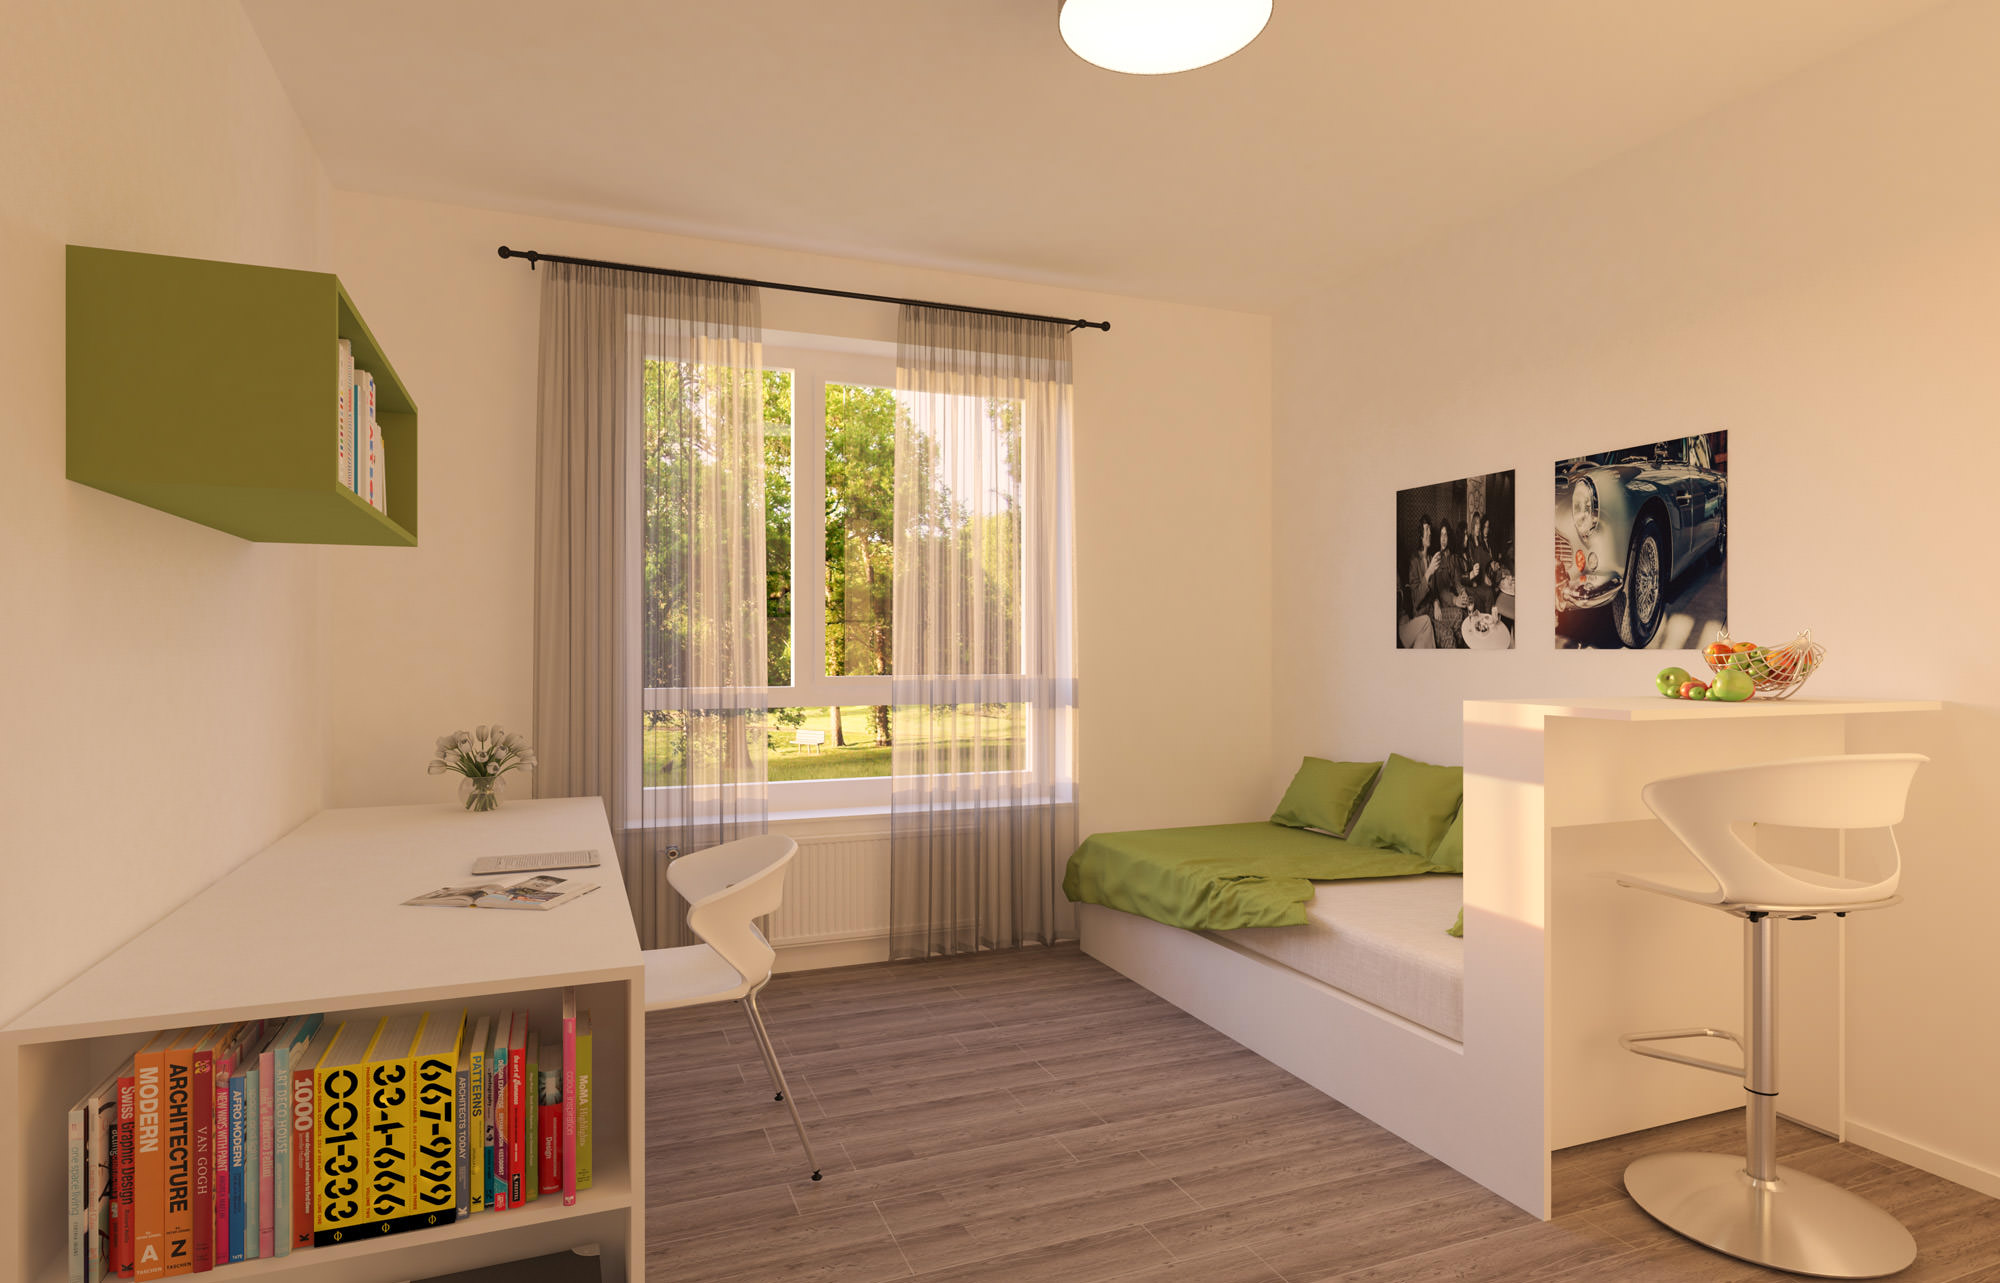 Möbelierte Zweiraum Wohnung für Studenten in Hildesheim